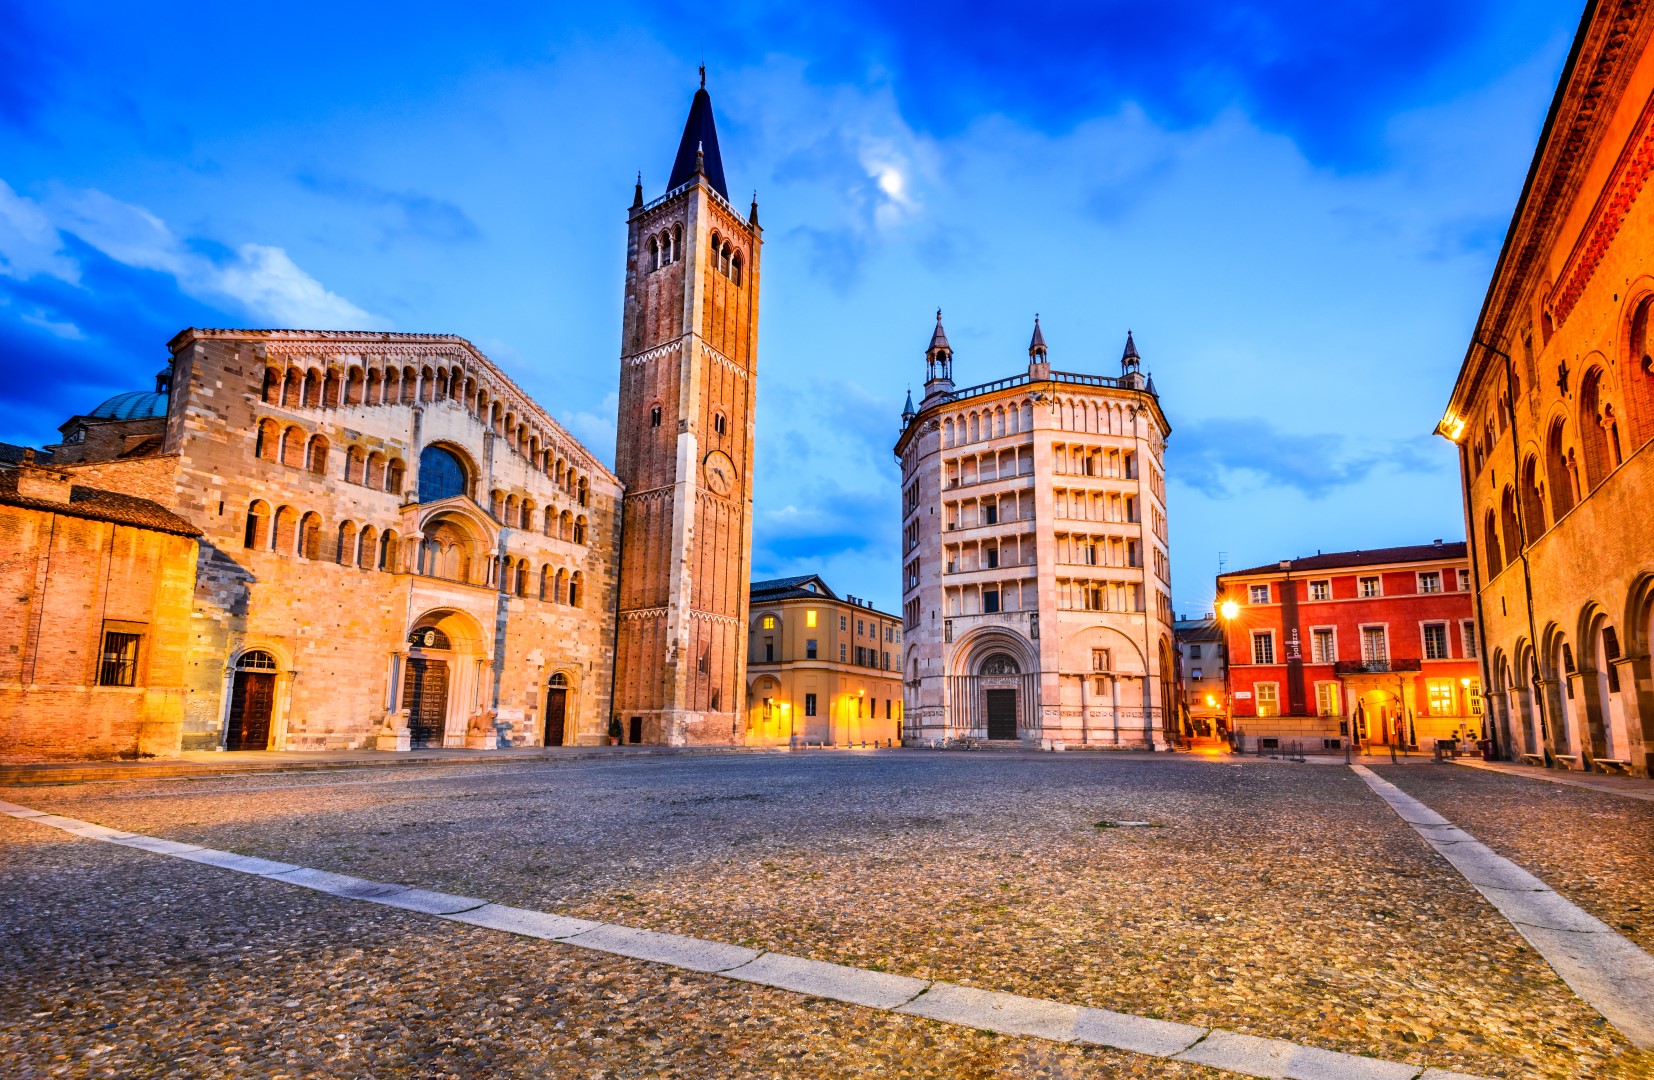 Parma, Włochy - Piazza del Duomo z katedrą i Baptysterium, zbudowany w 1059 roku. Architektura romańska w regionie Emilia-Romania.